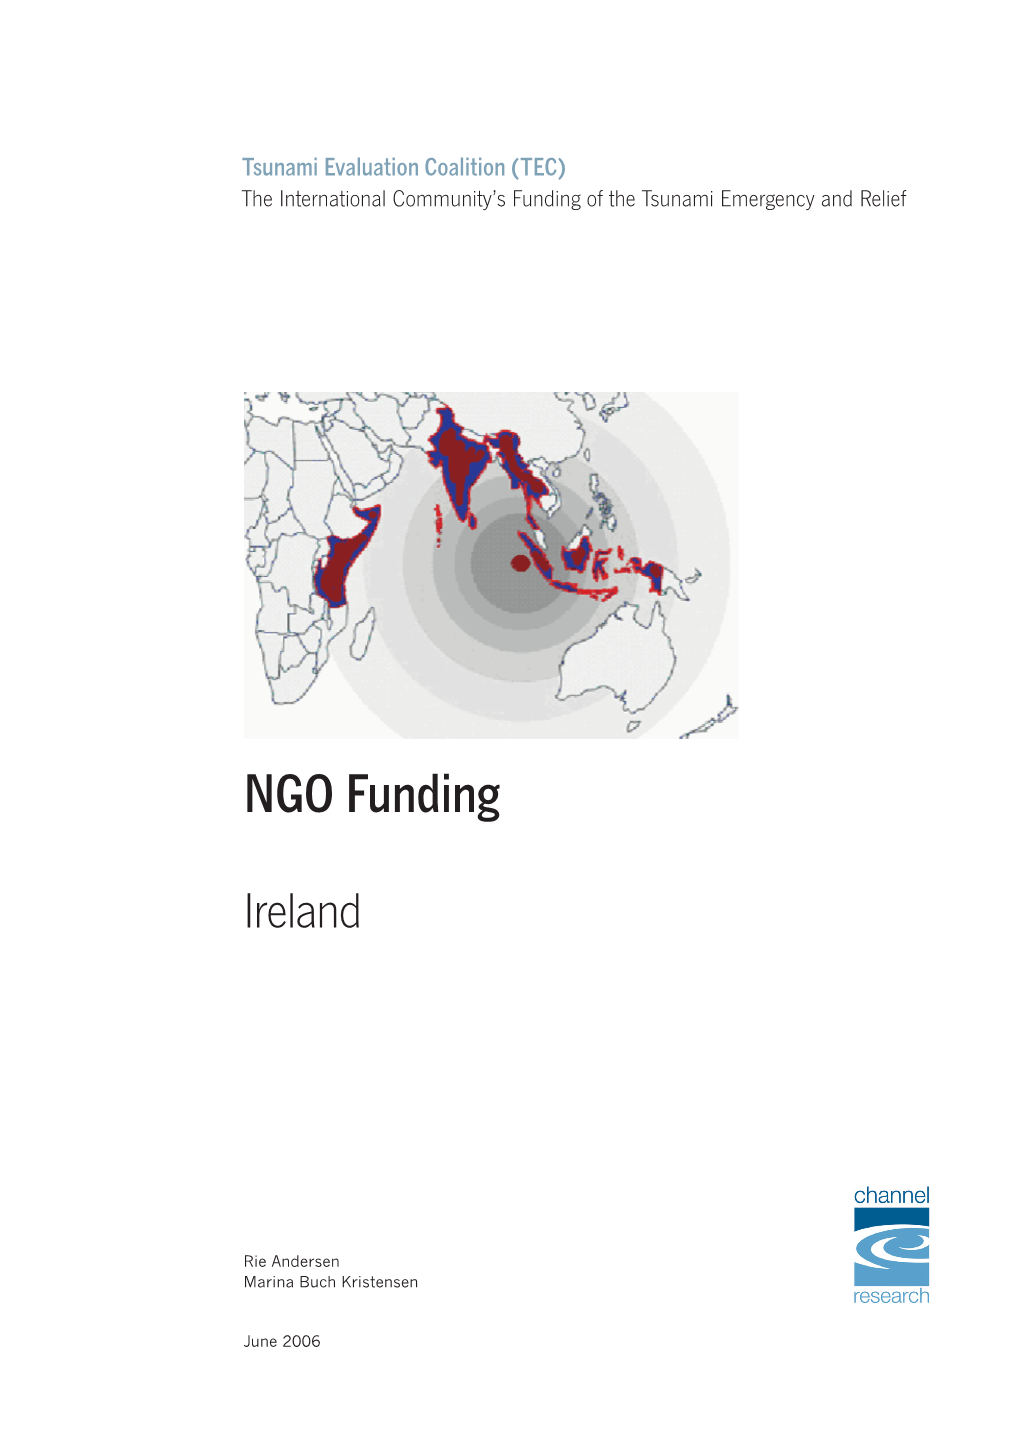 NGO Funding Ireland